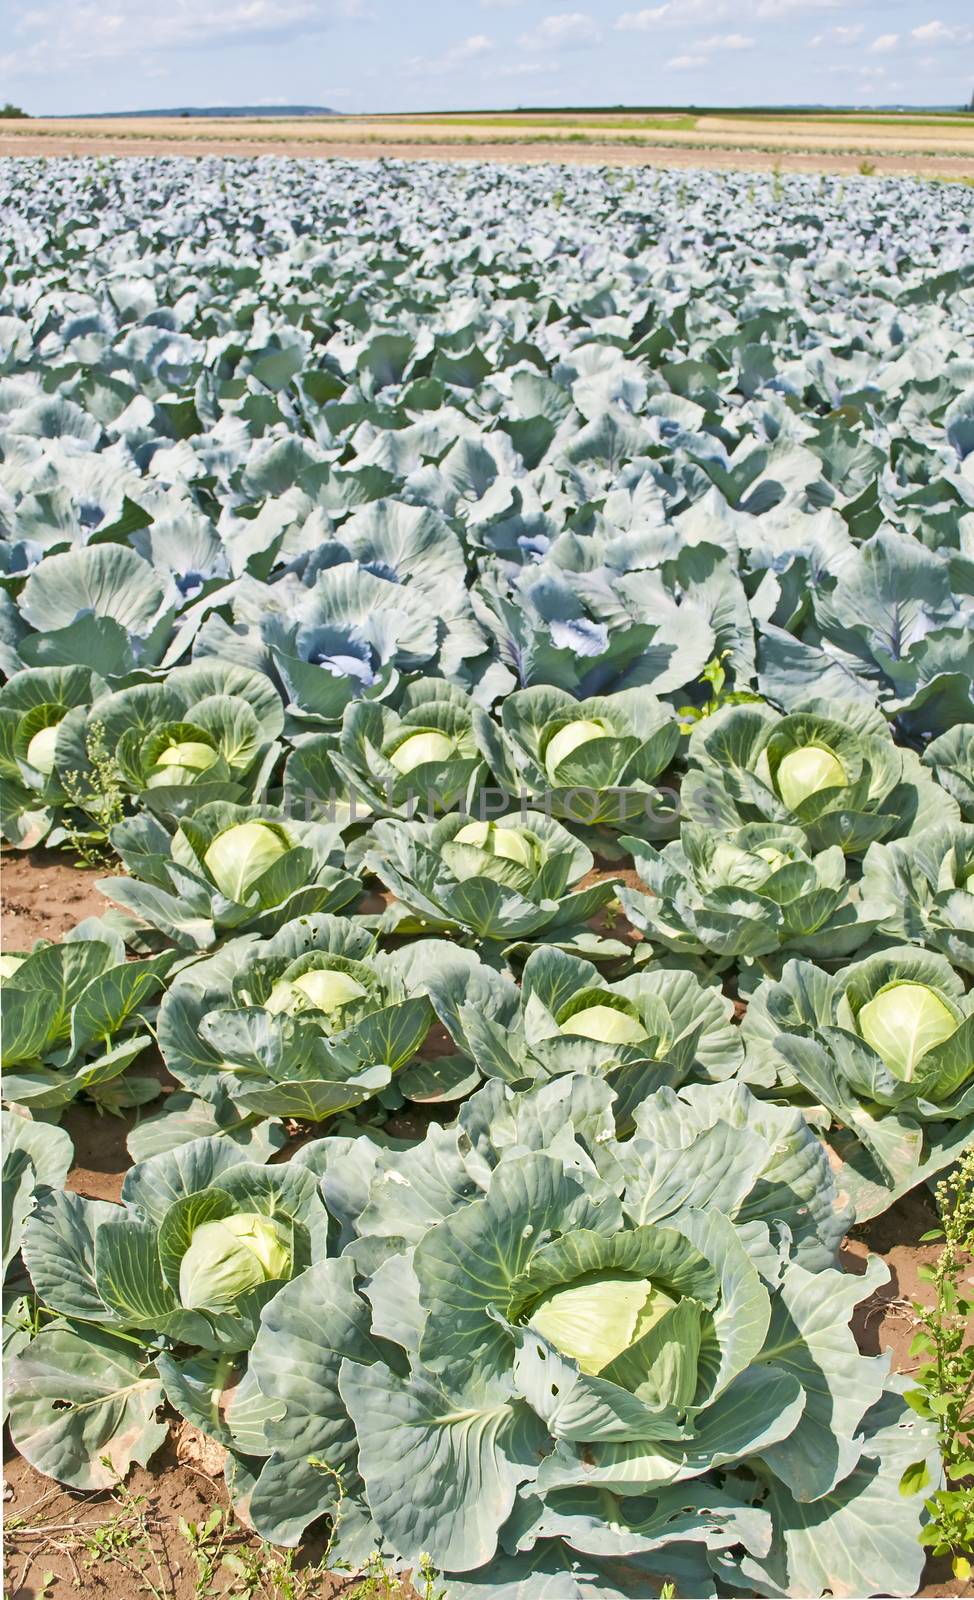 cultivation of kale by Jochen